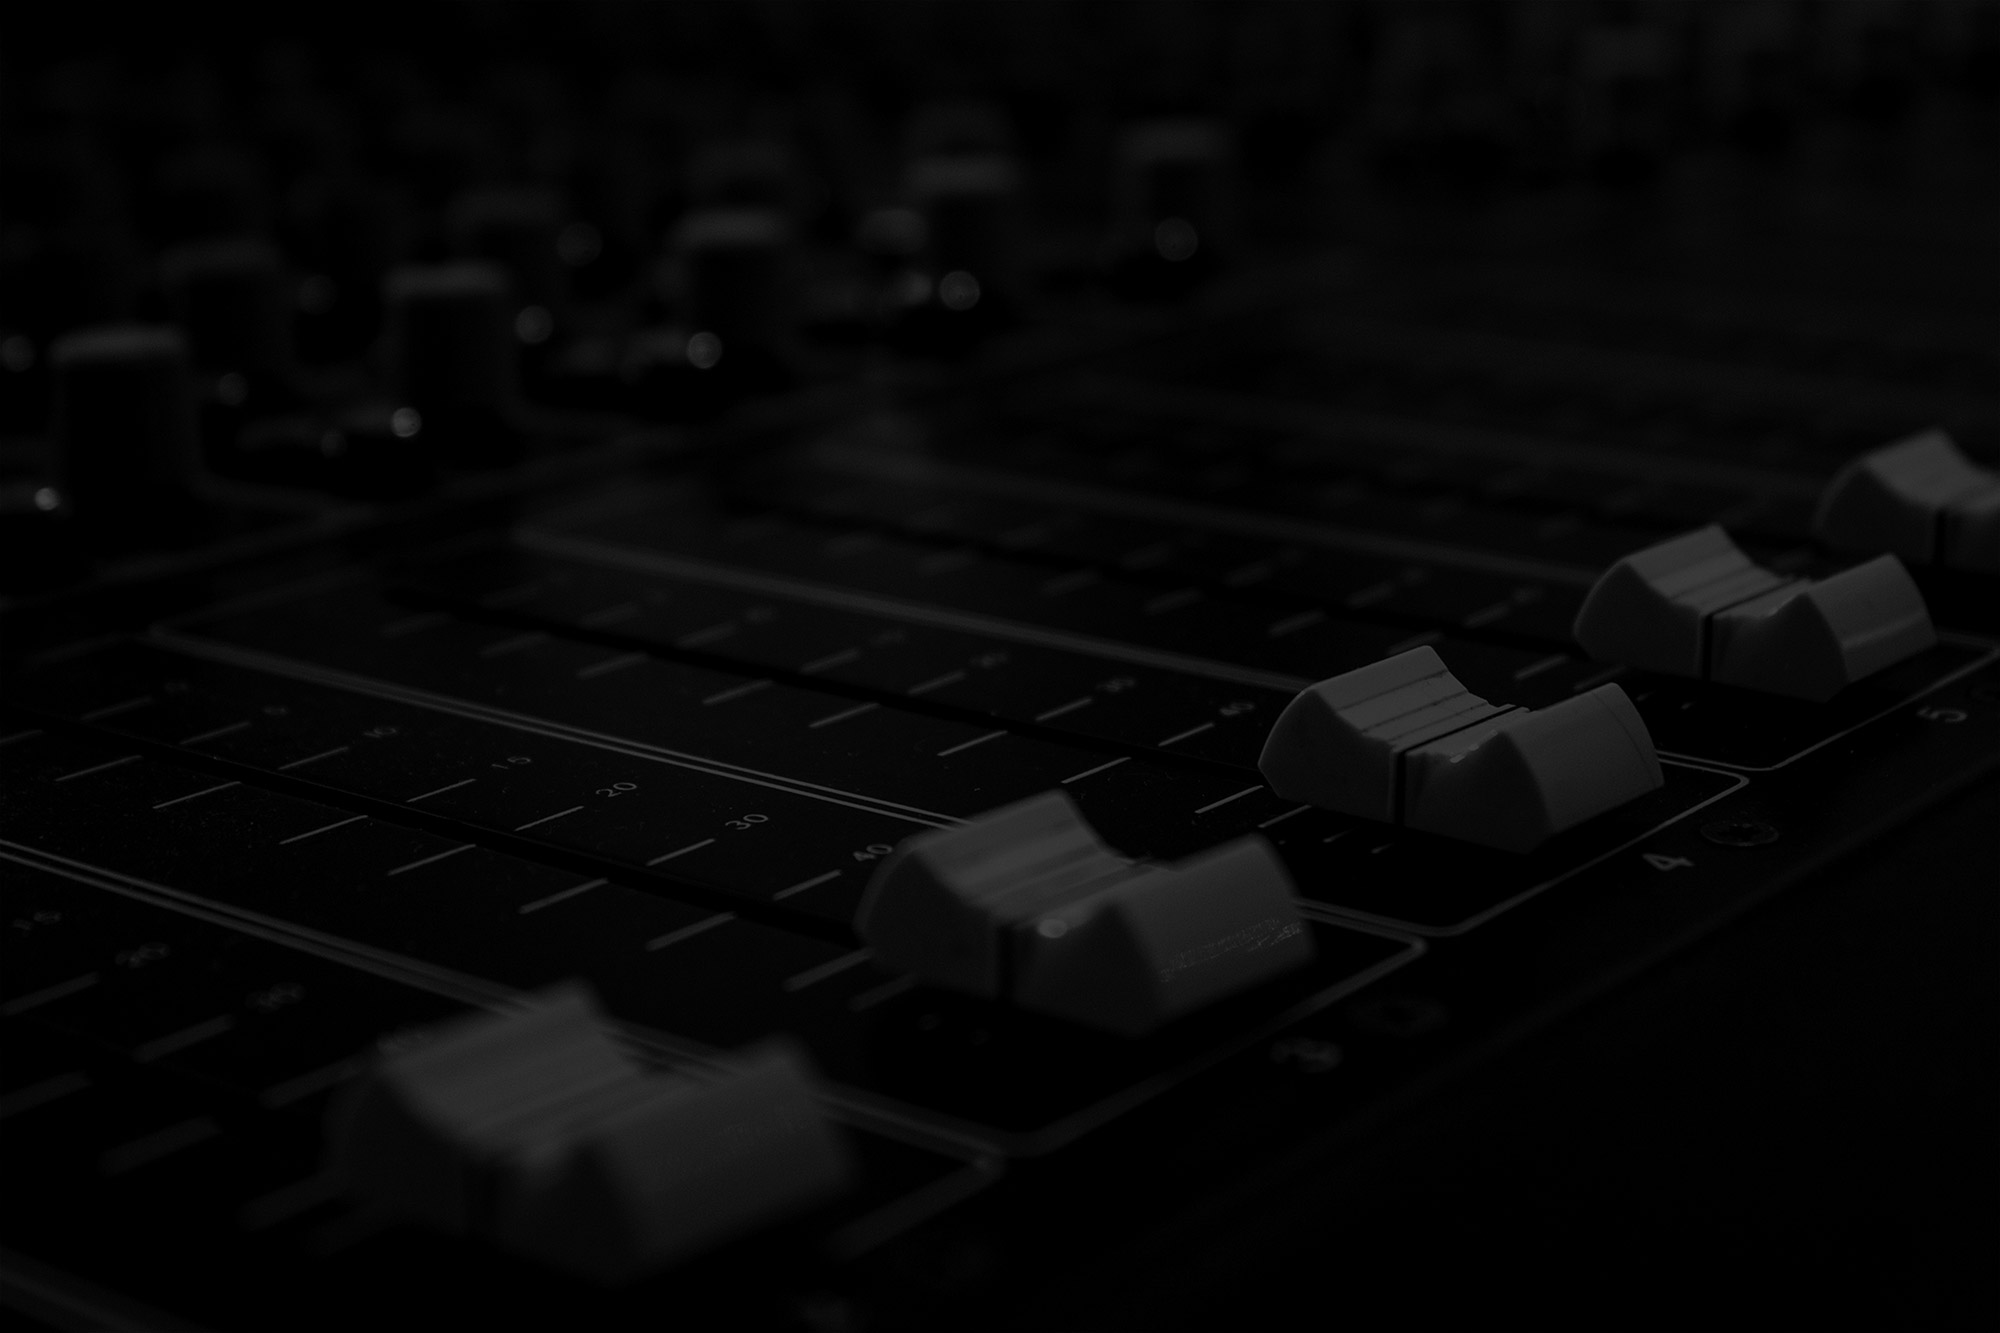 Shadyn : Producing • Mixing • Mastering